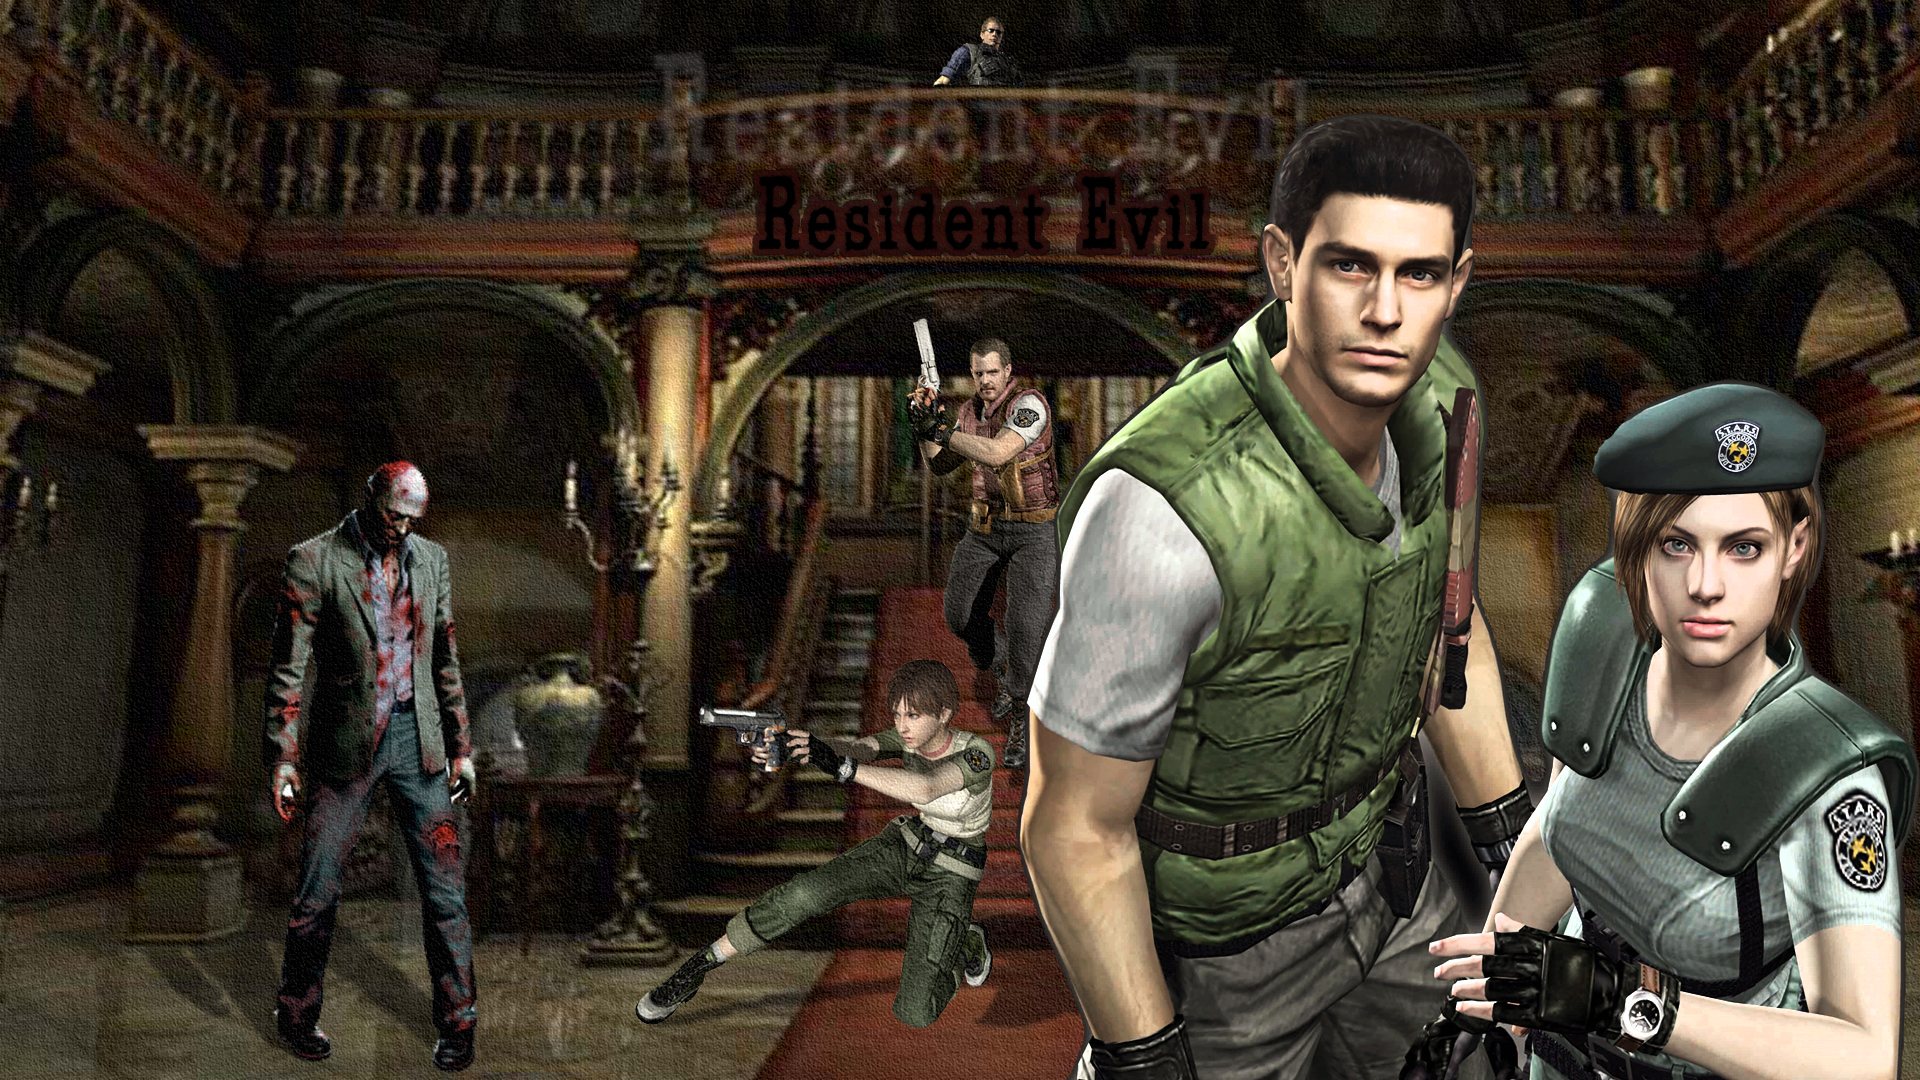 Resident_Evil_REmake_Wallpaper_by_MusashiChan69.jpg